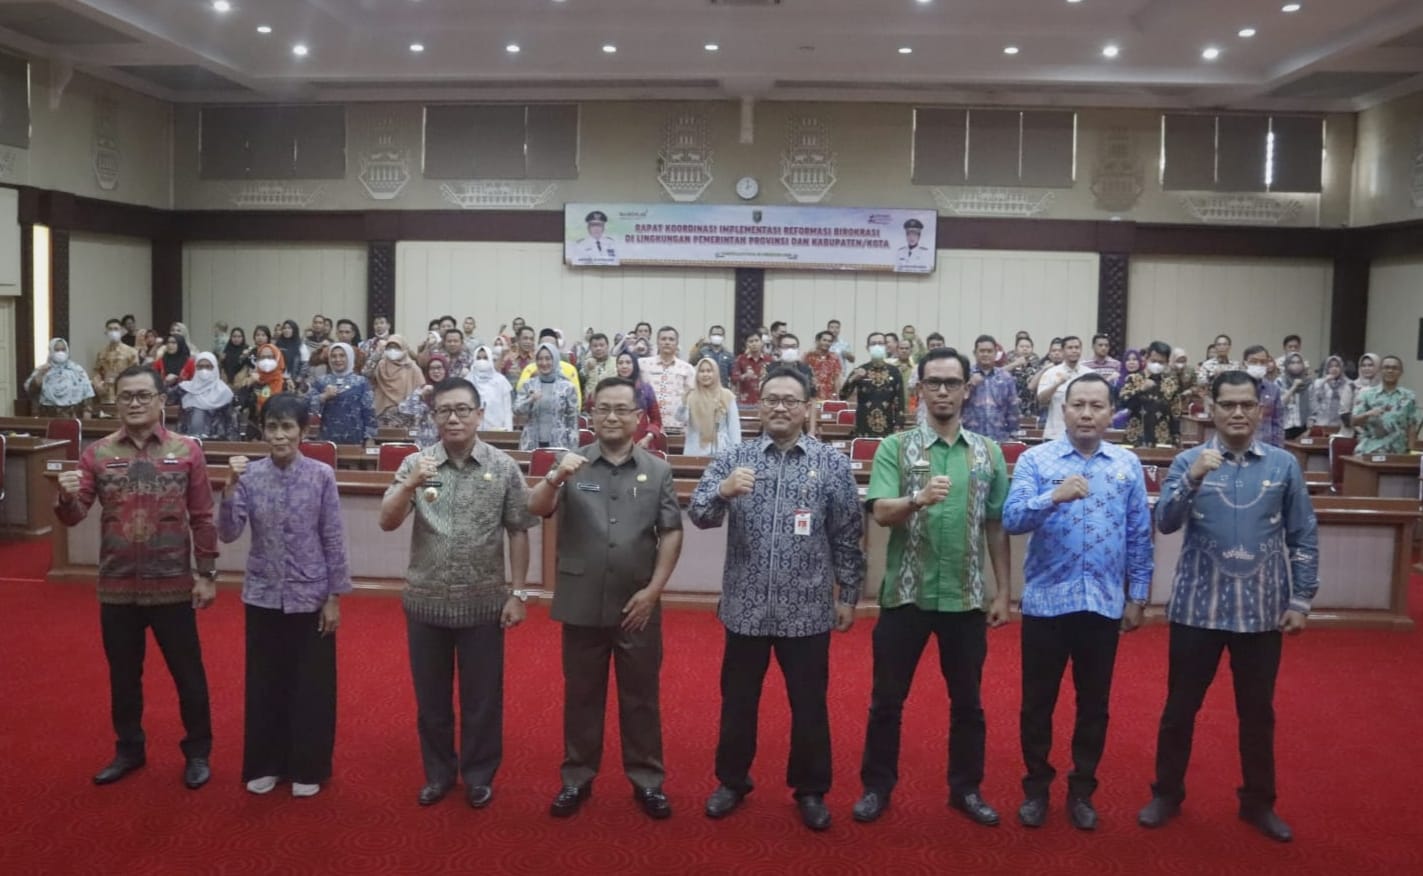 Pemprov Lampung Gelar Rakor Implementasi Reformasi Birokrasi di Lingkungan Pemprov Lampung dan Kabupaten/Kota